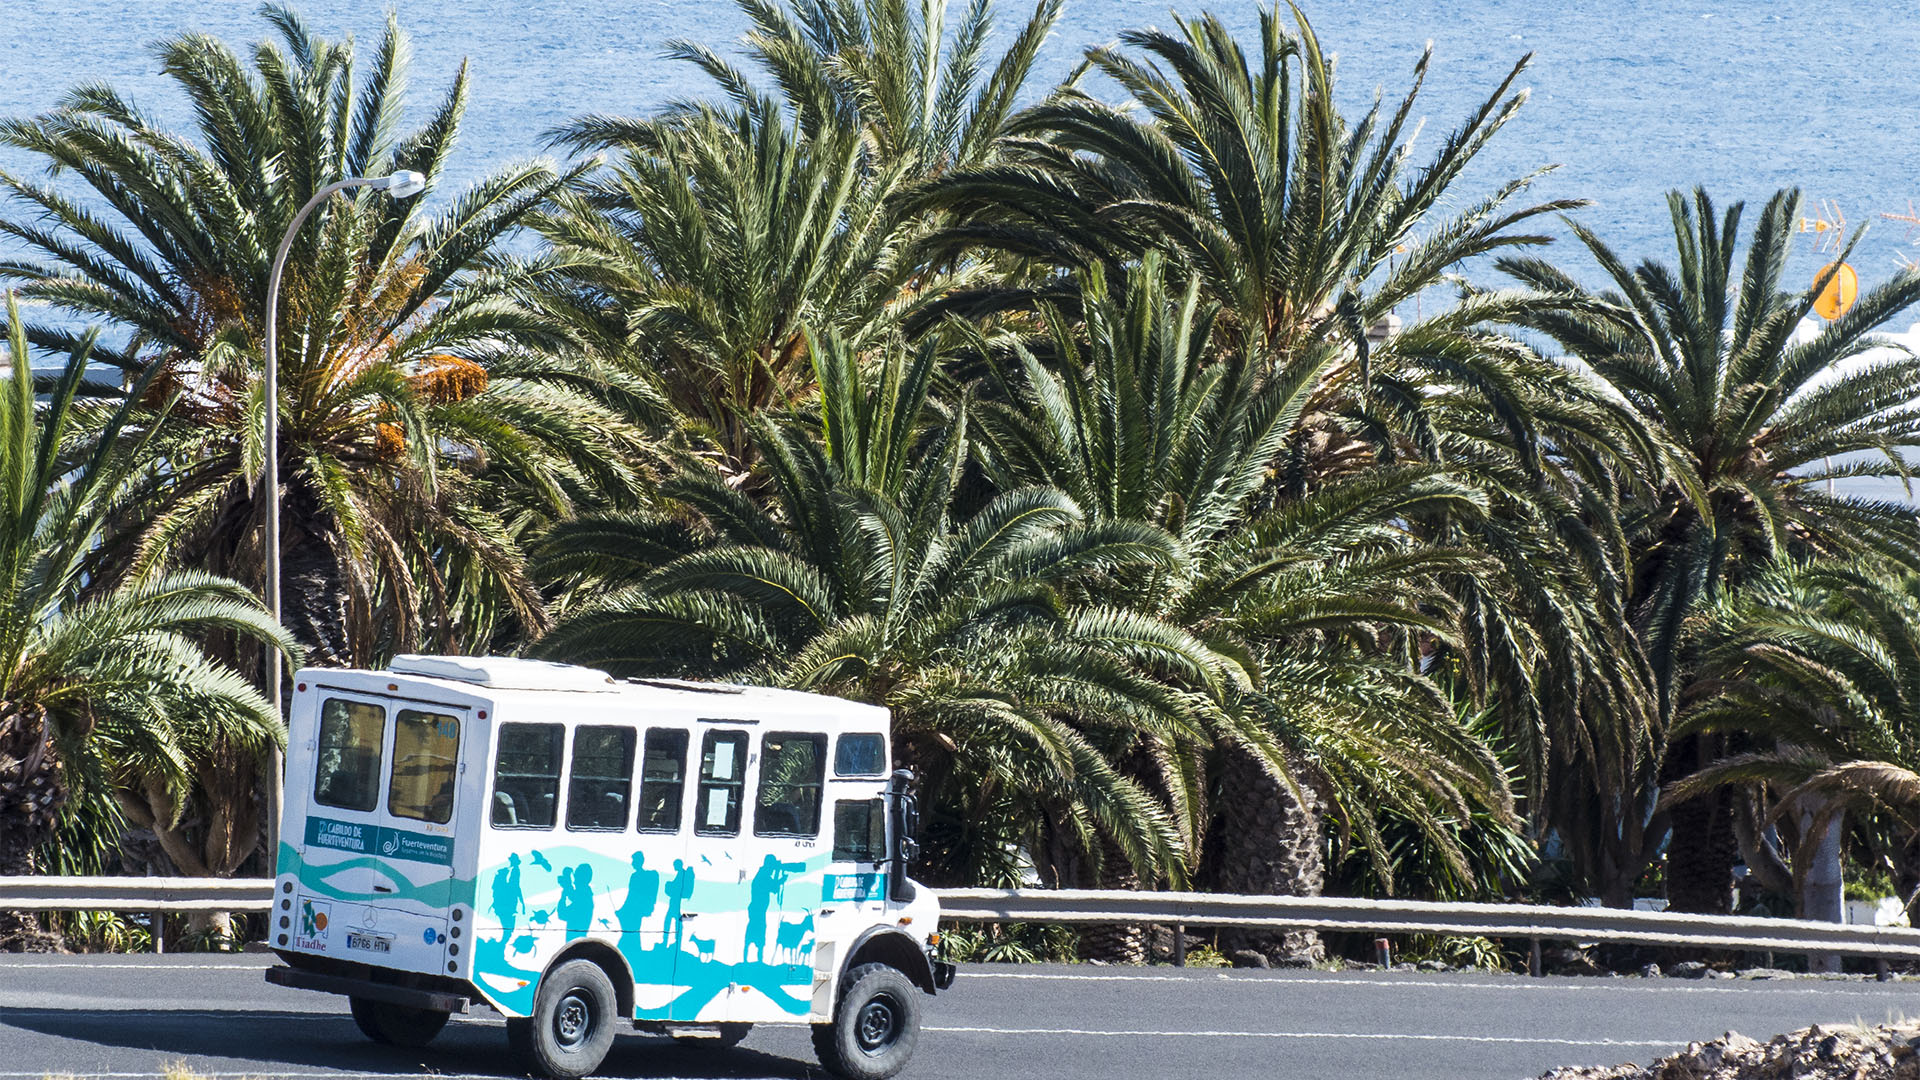 Unterwegs auf Fuerteventura mit öffentlichen Verkehrsmitteln – Bus und Taxi.